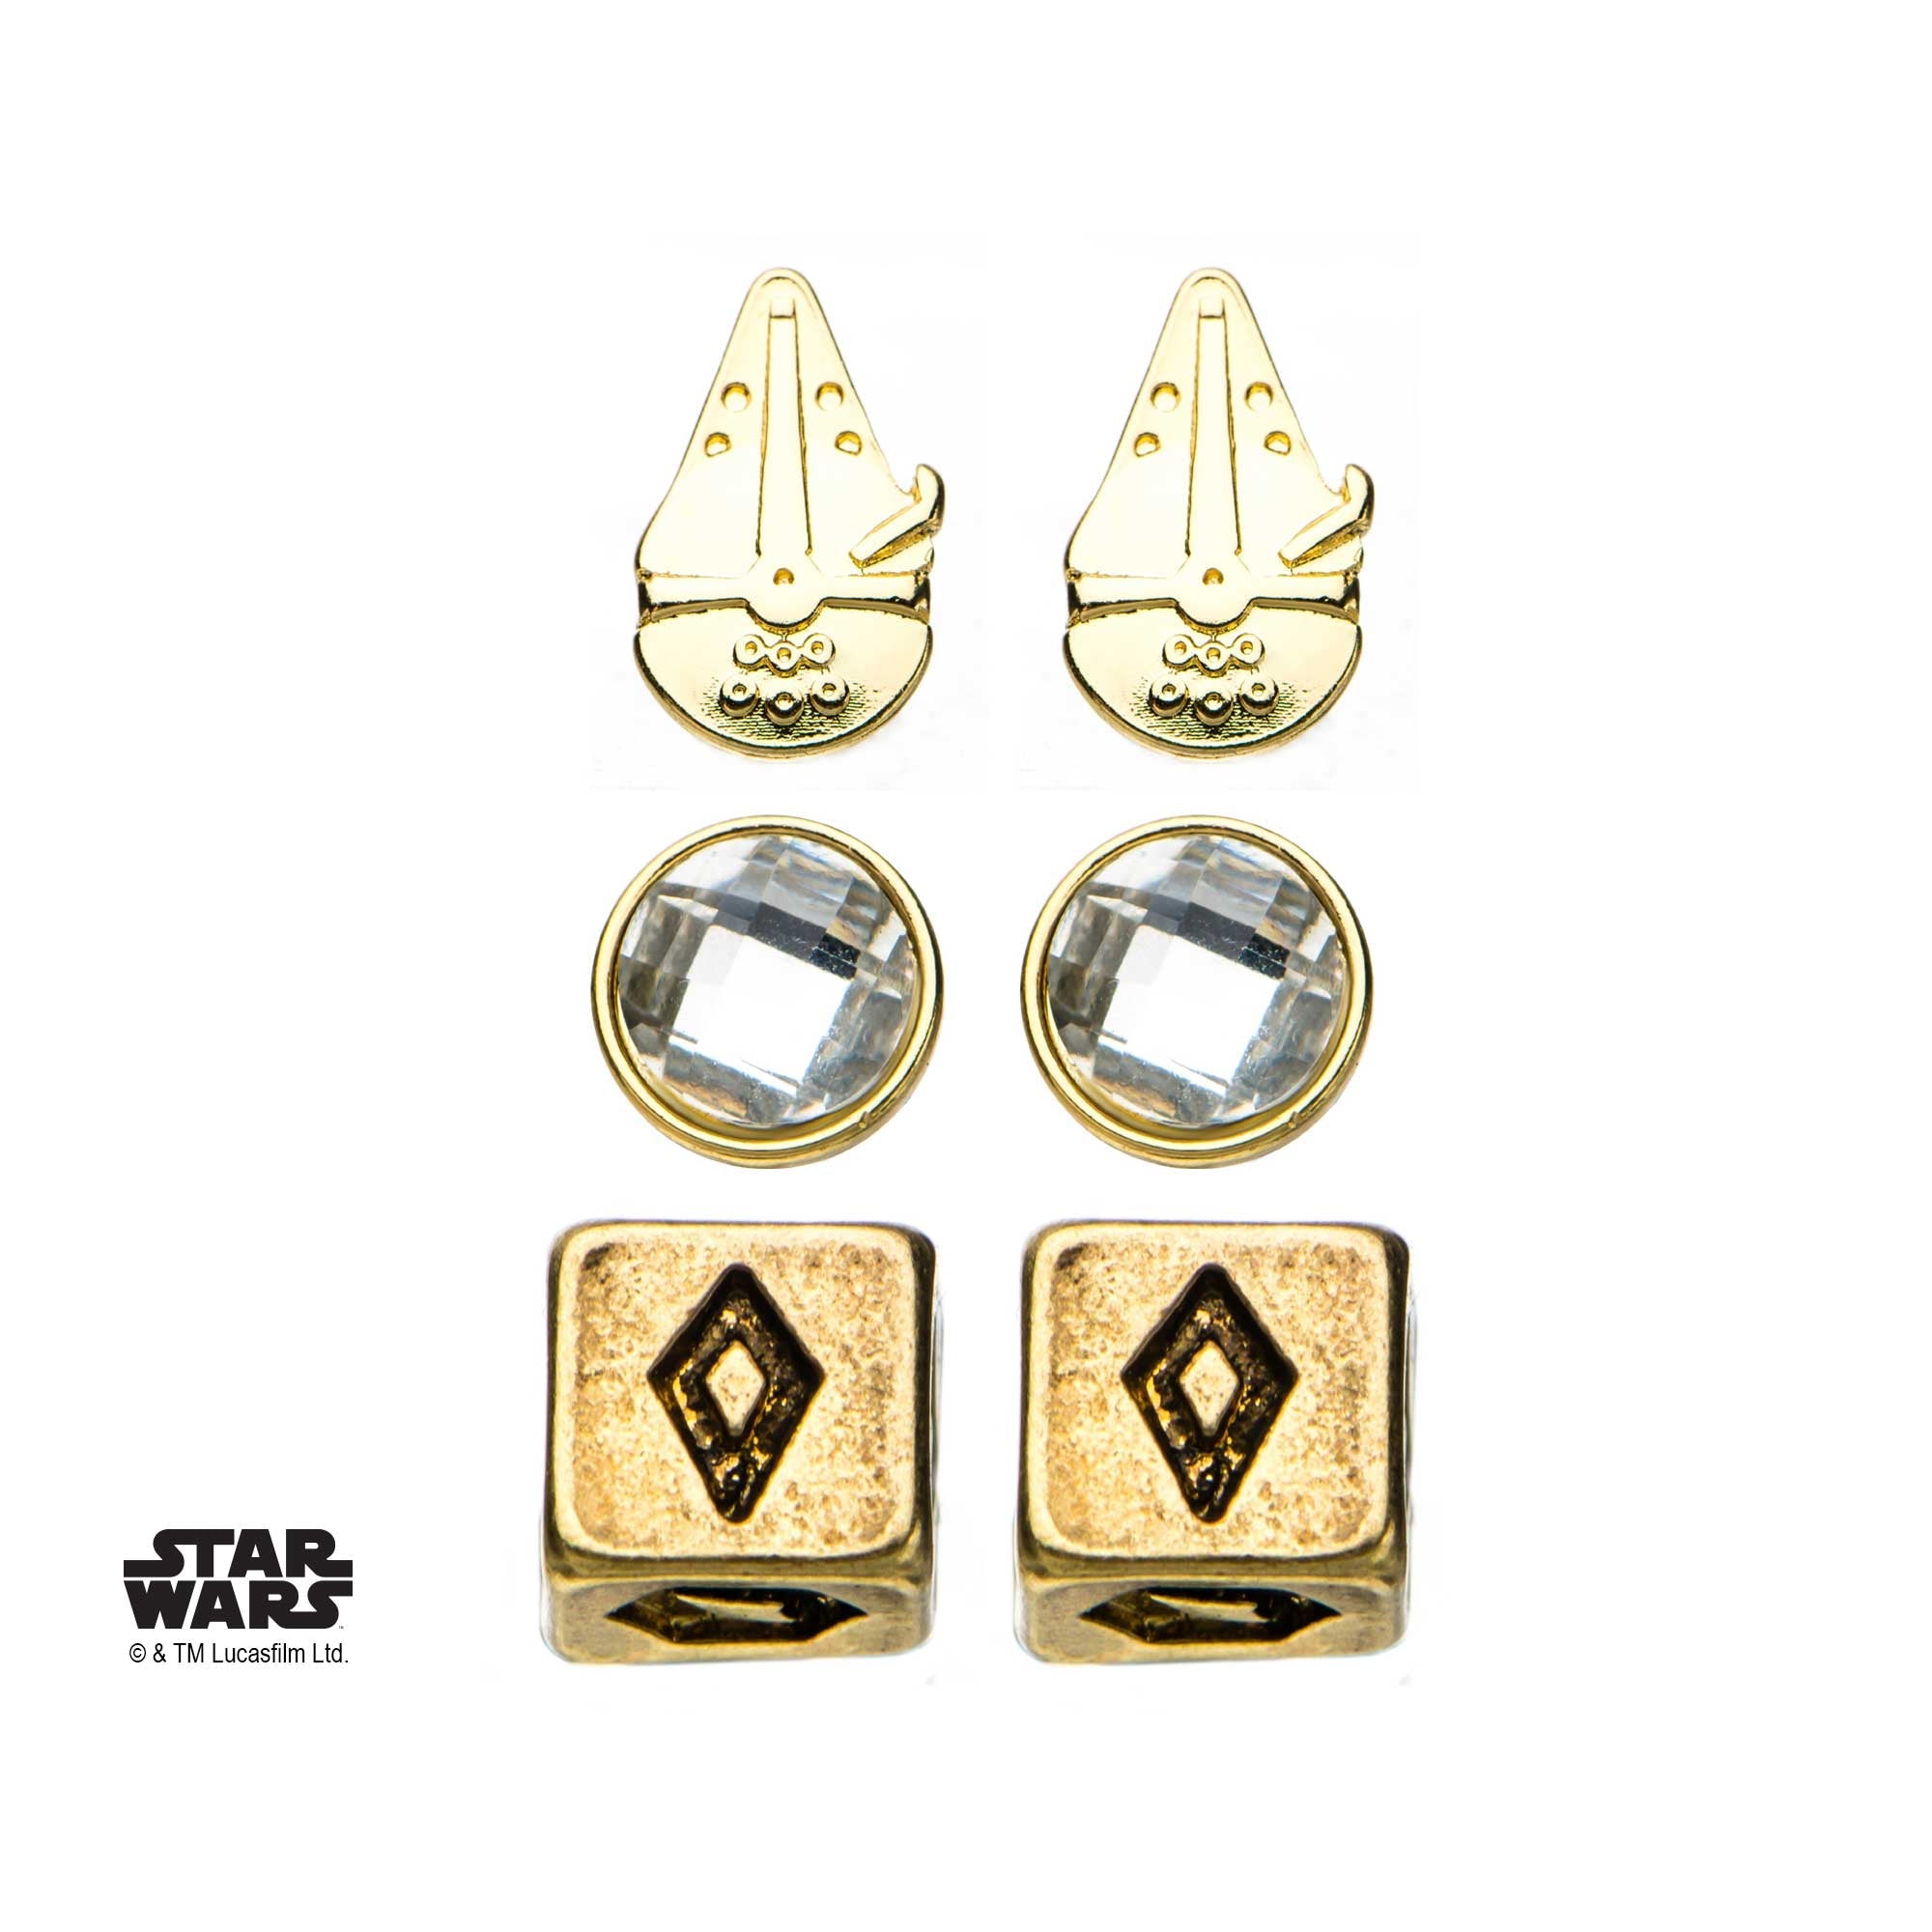 Star Wars Millennium Falcon Han Solo Dice Stud Earrings Set